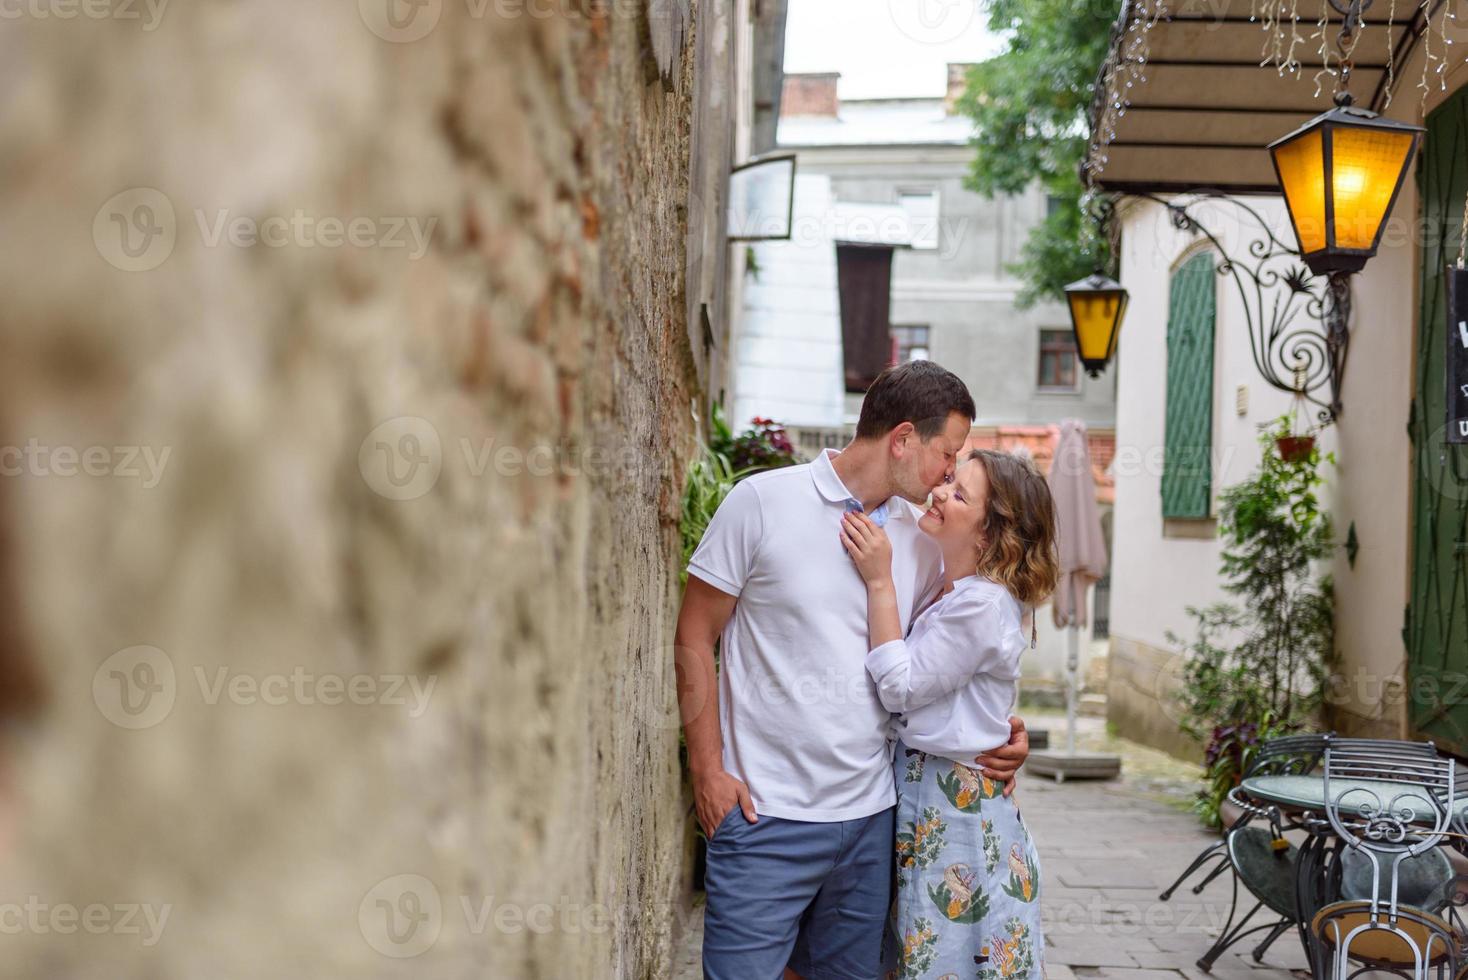 una pareja enamorada en las calles del puente viejo foto